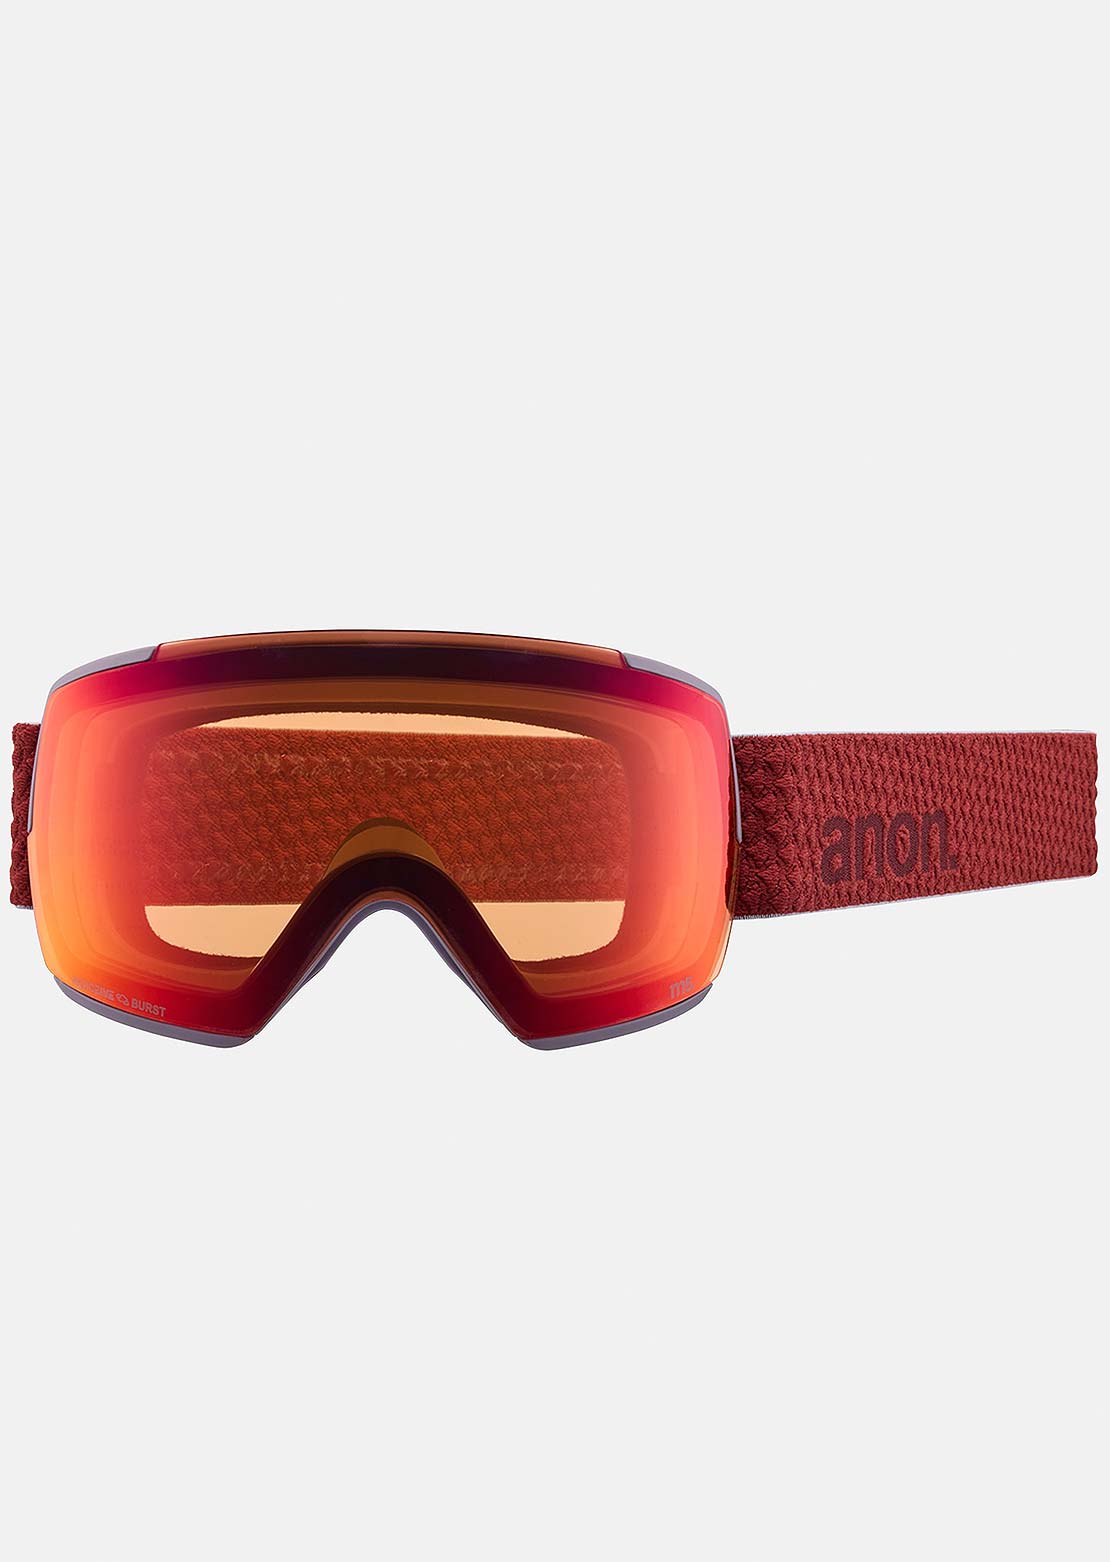 Anon Unisex M5 Perceive Goggles + Bonus Lens Mars/Perceive Sunny Red